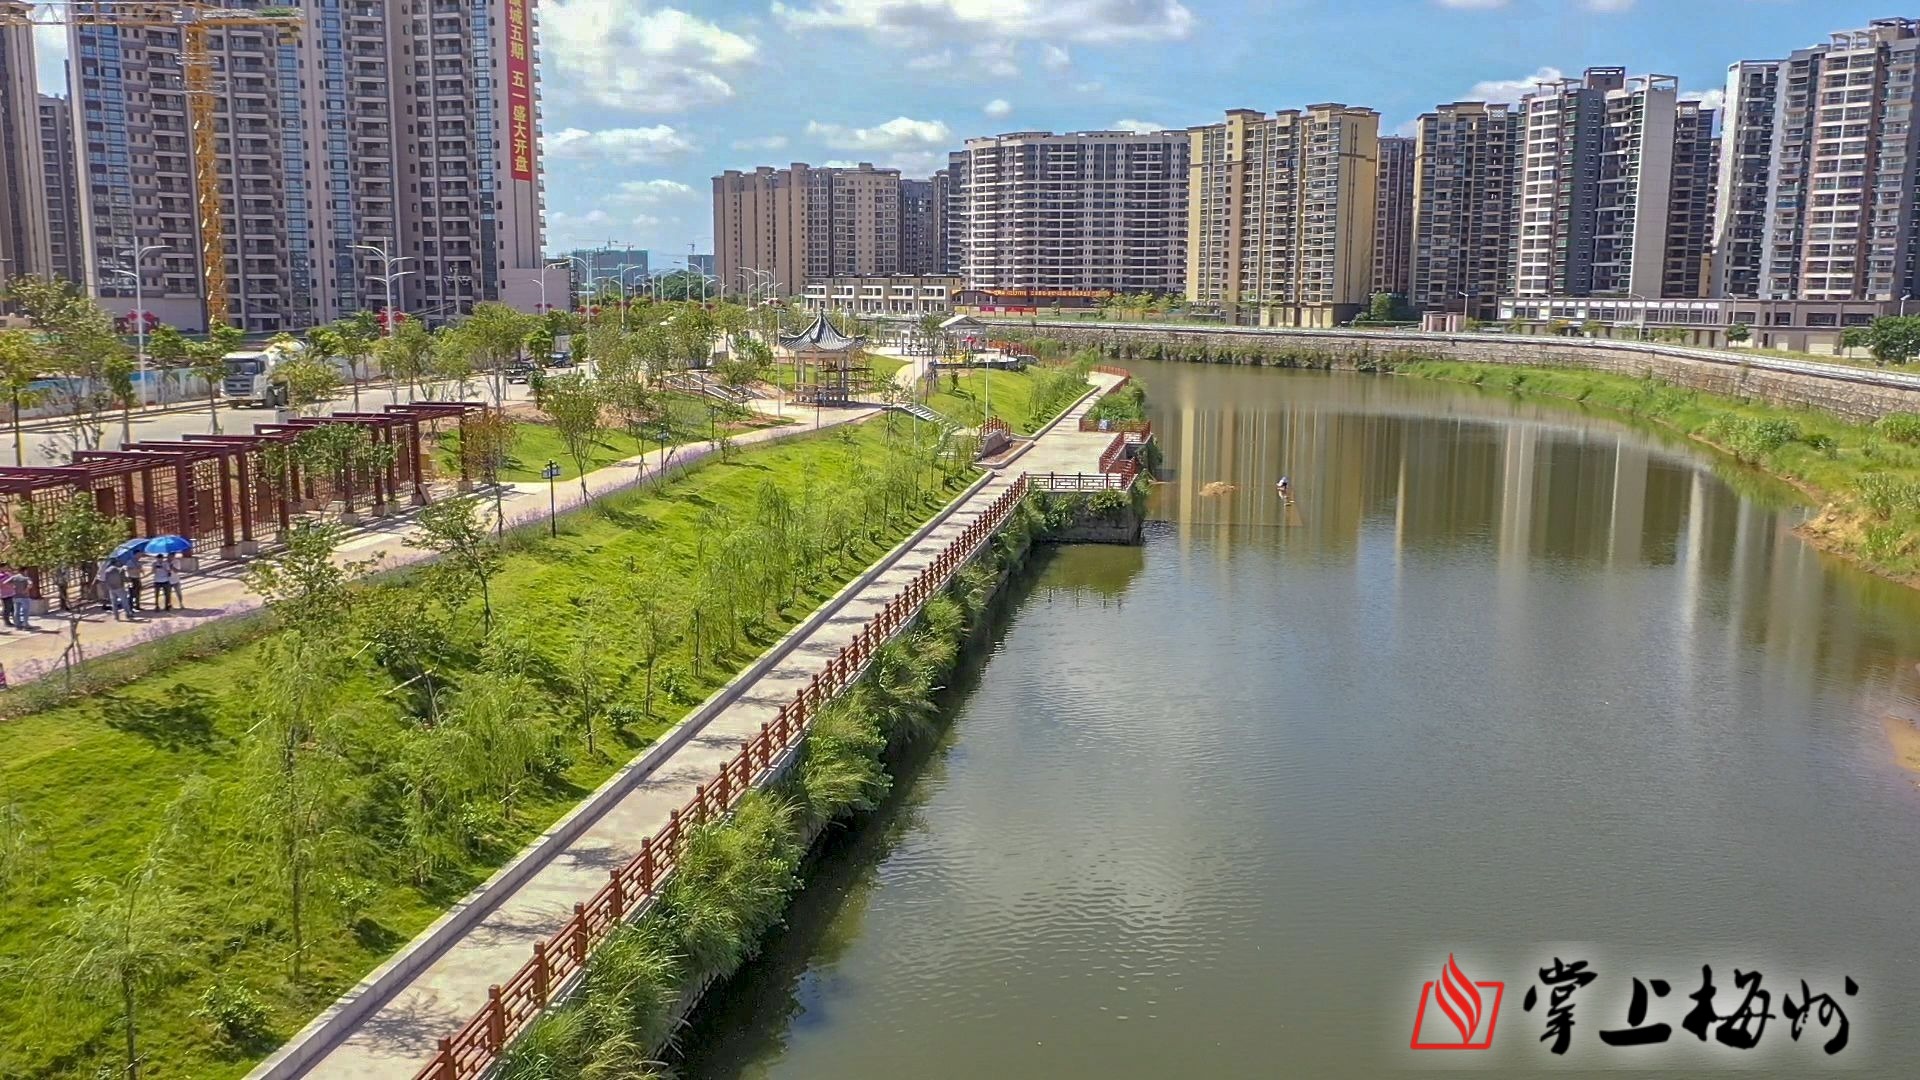 今年国庆节前夕,兴宁市亲水公园一区全面建成开放,为广大市民休闲健身